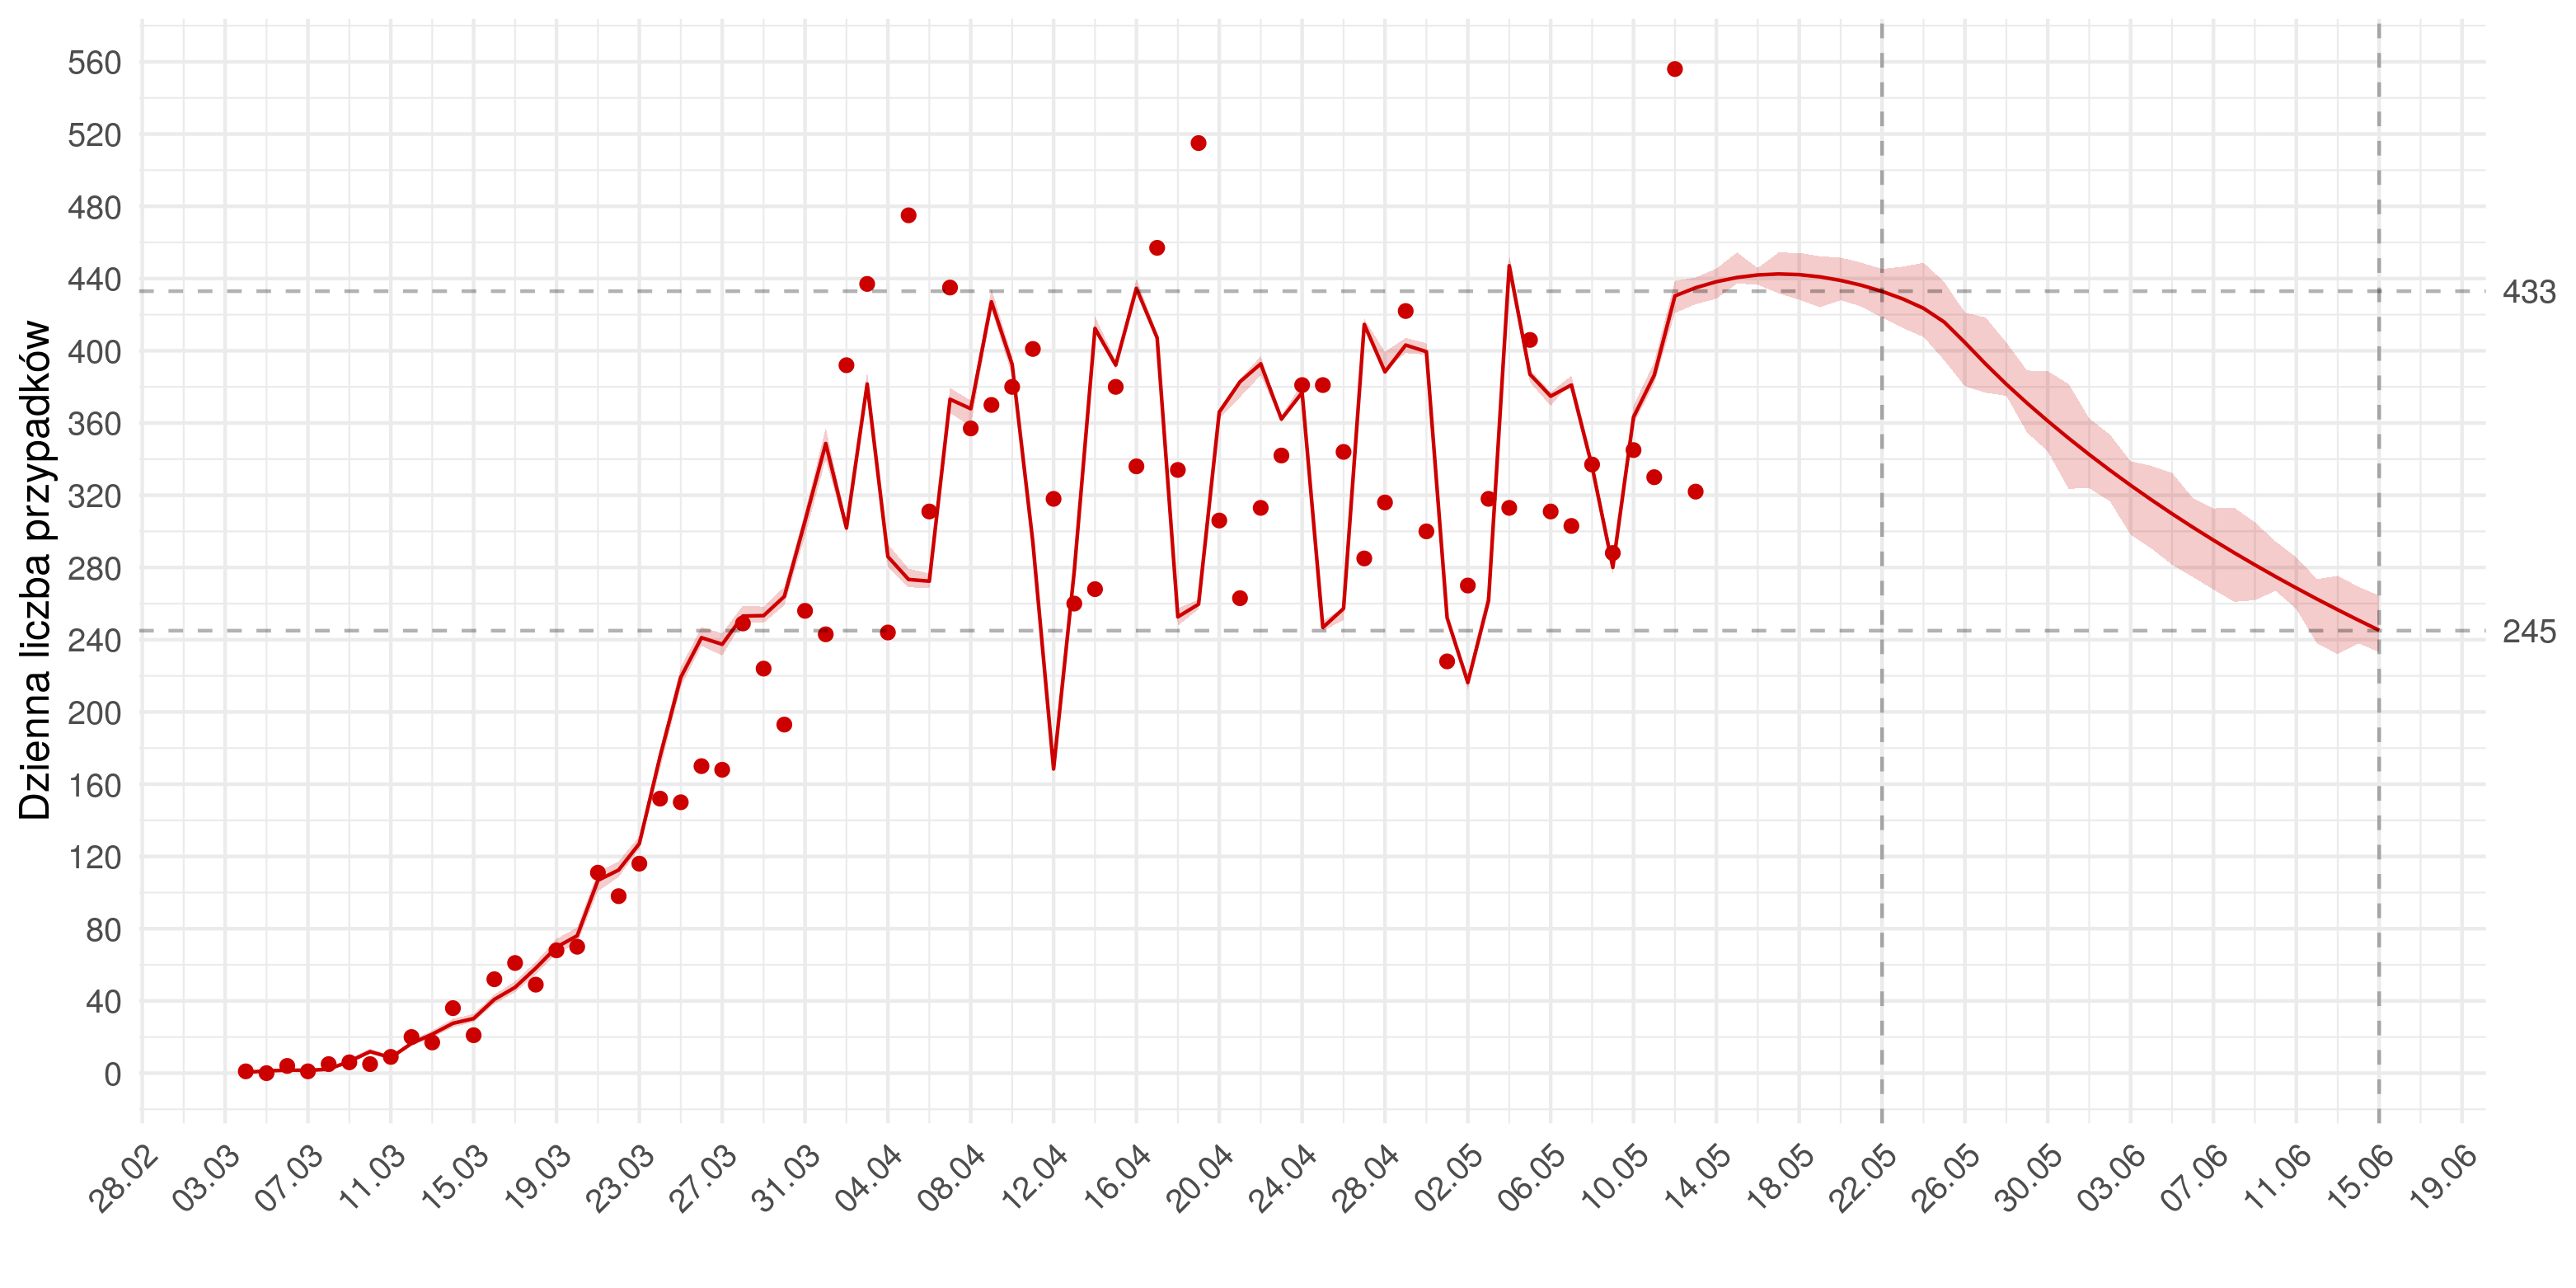 Średnioterminowa prognoza dziennej liczby rozpoznań zdiagnozowanych (czerwona linia) w modelu stochastycznym. Czerwonymi kropkami oznaczono obserwowane dane. Czerwona linia pokazuje predykcję z modelu - do 13.05 jest to predykcja w oparciu o obserwowane liczby wykonanych testów, następnie przyjęto trend wzrostowy w liczbie wykonywanych badań, co skutkuje prognozowanym spadkiem liczby zakażeń.